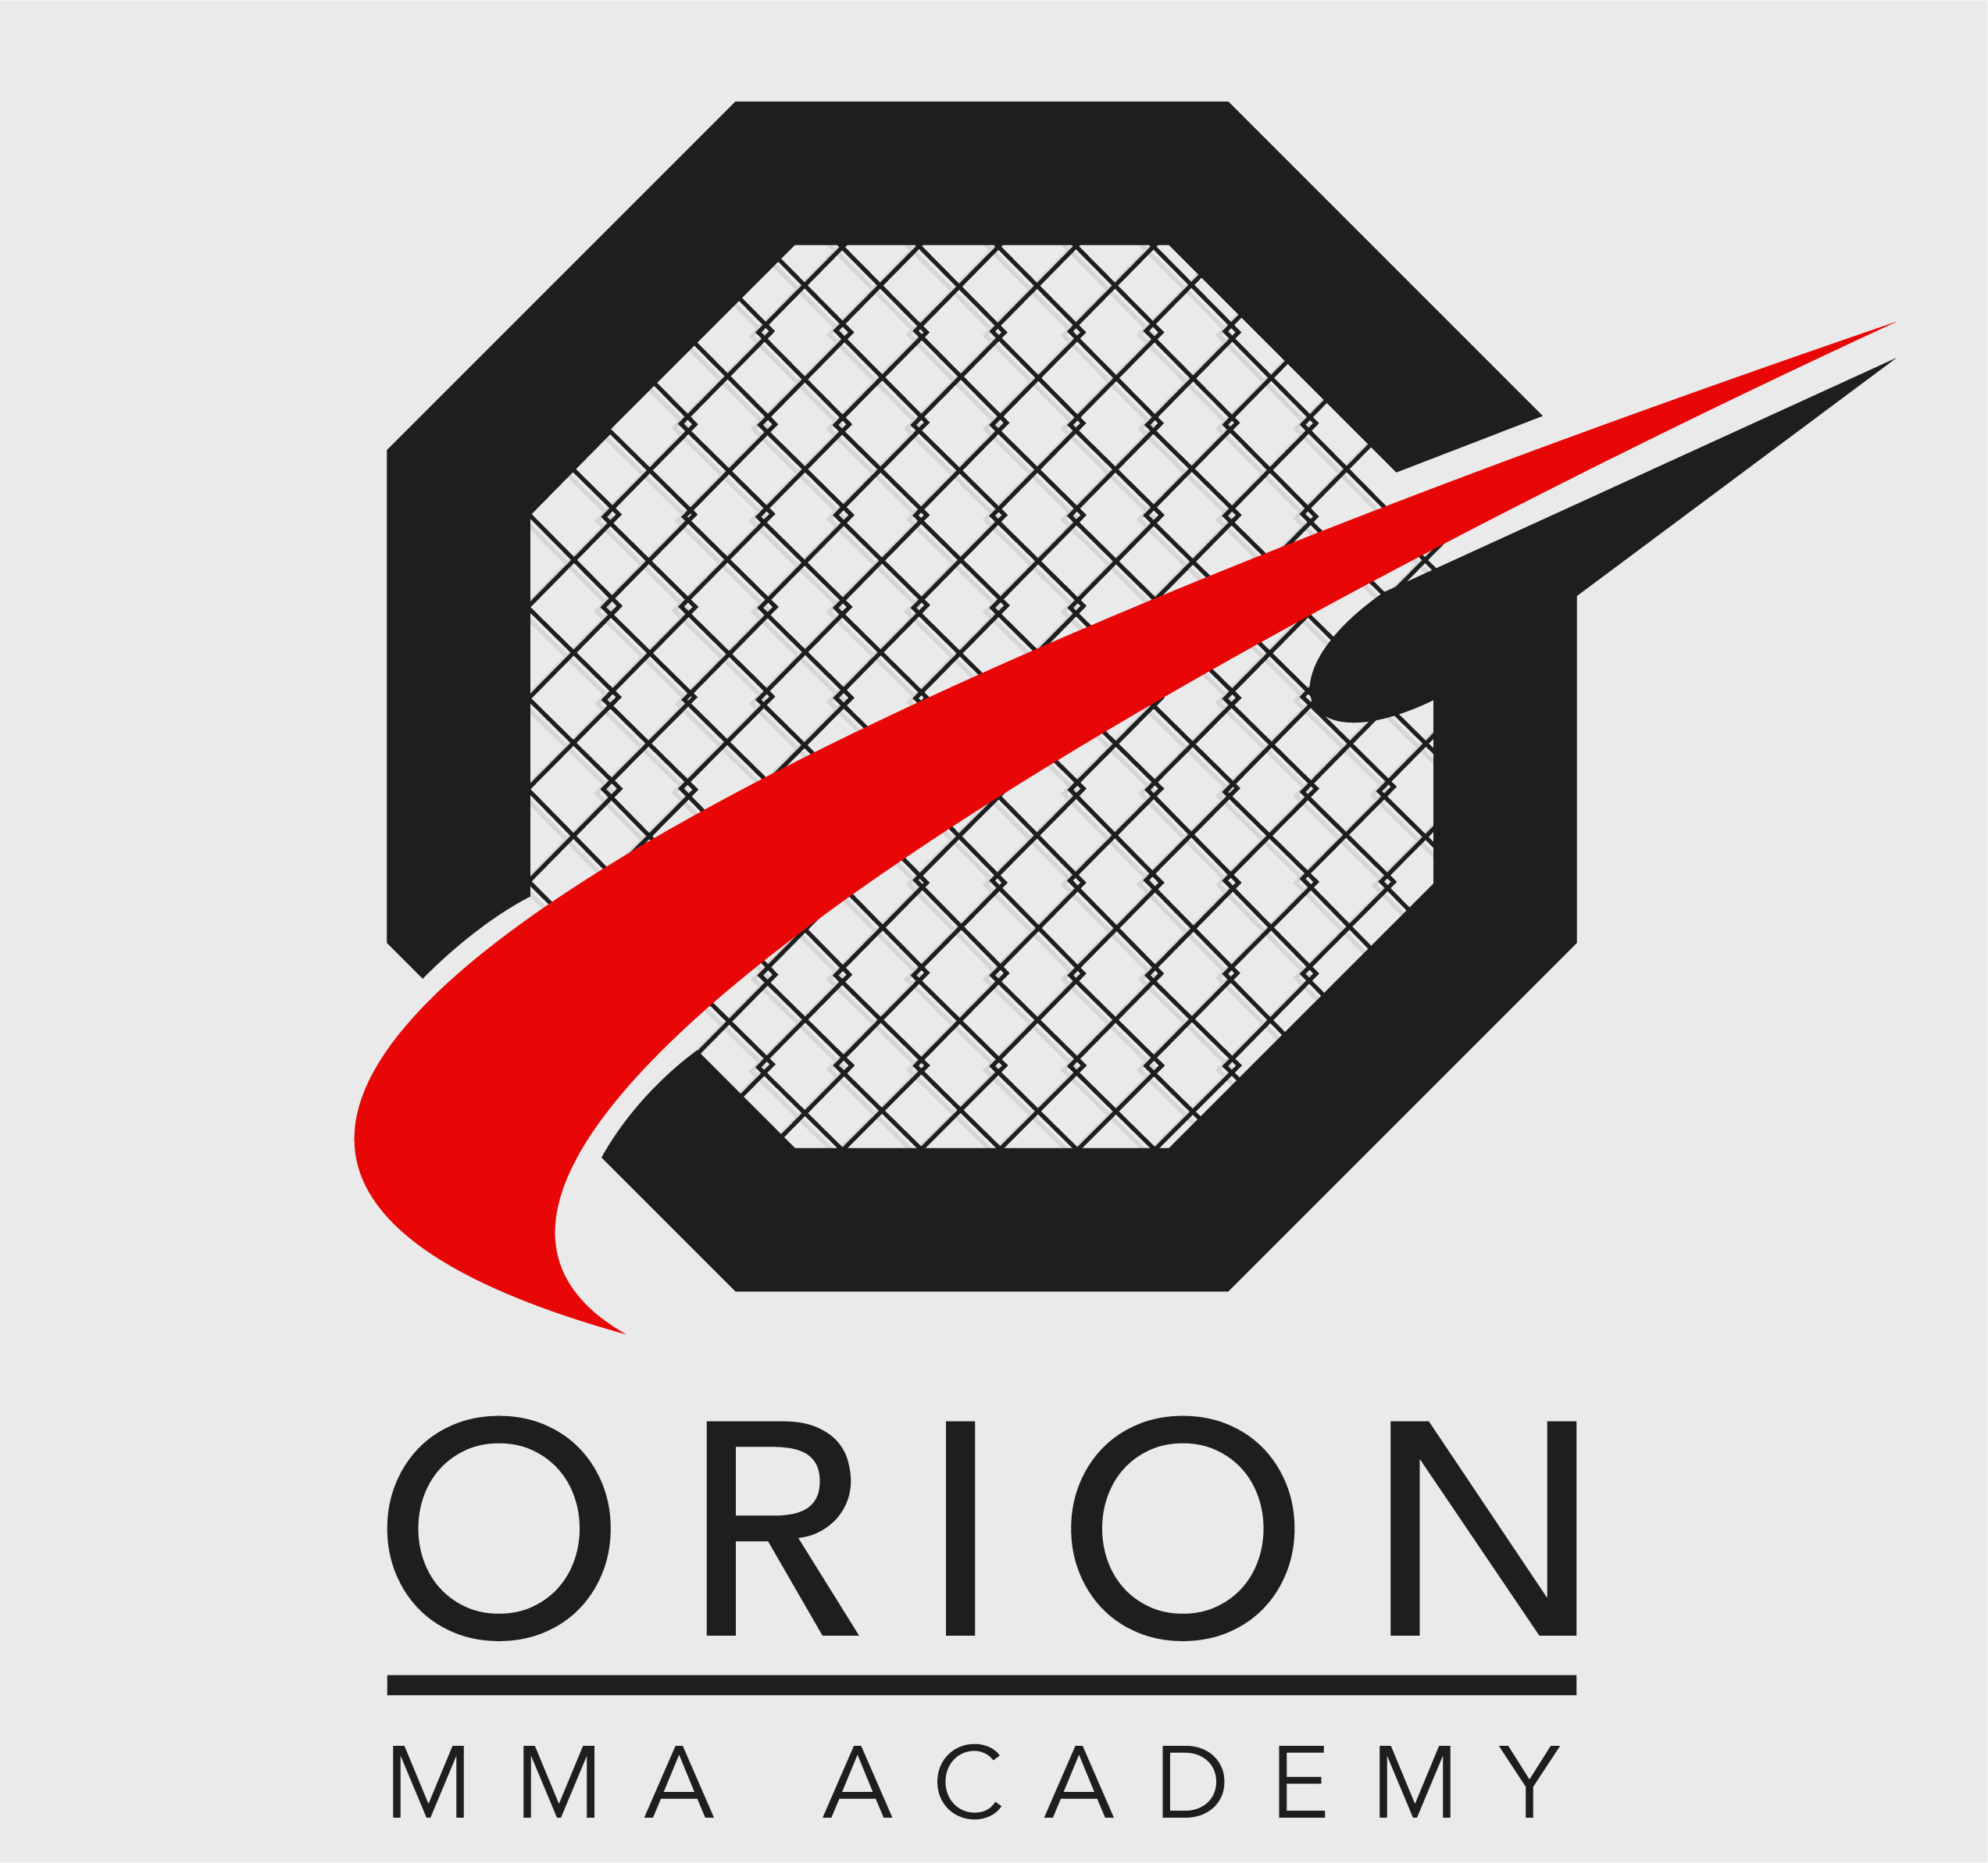 ORION MMA ACADEMY